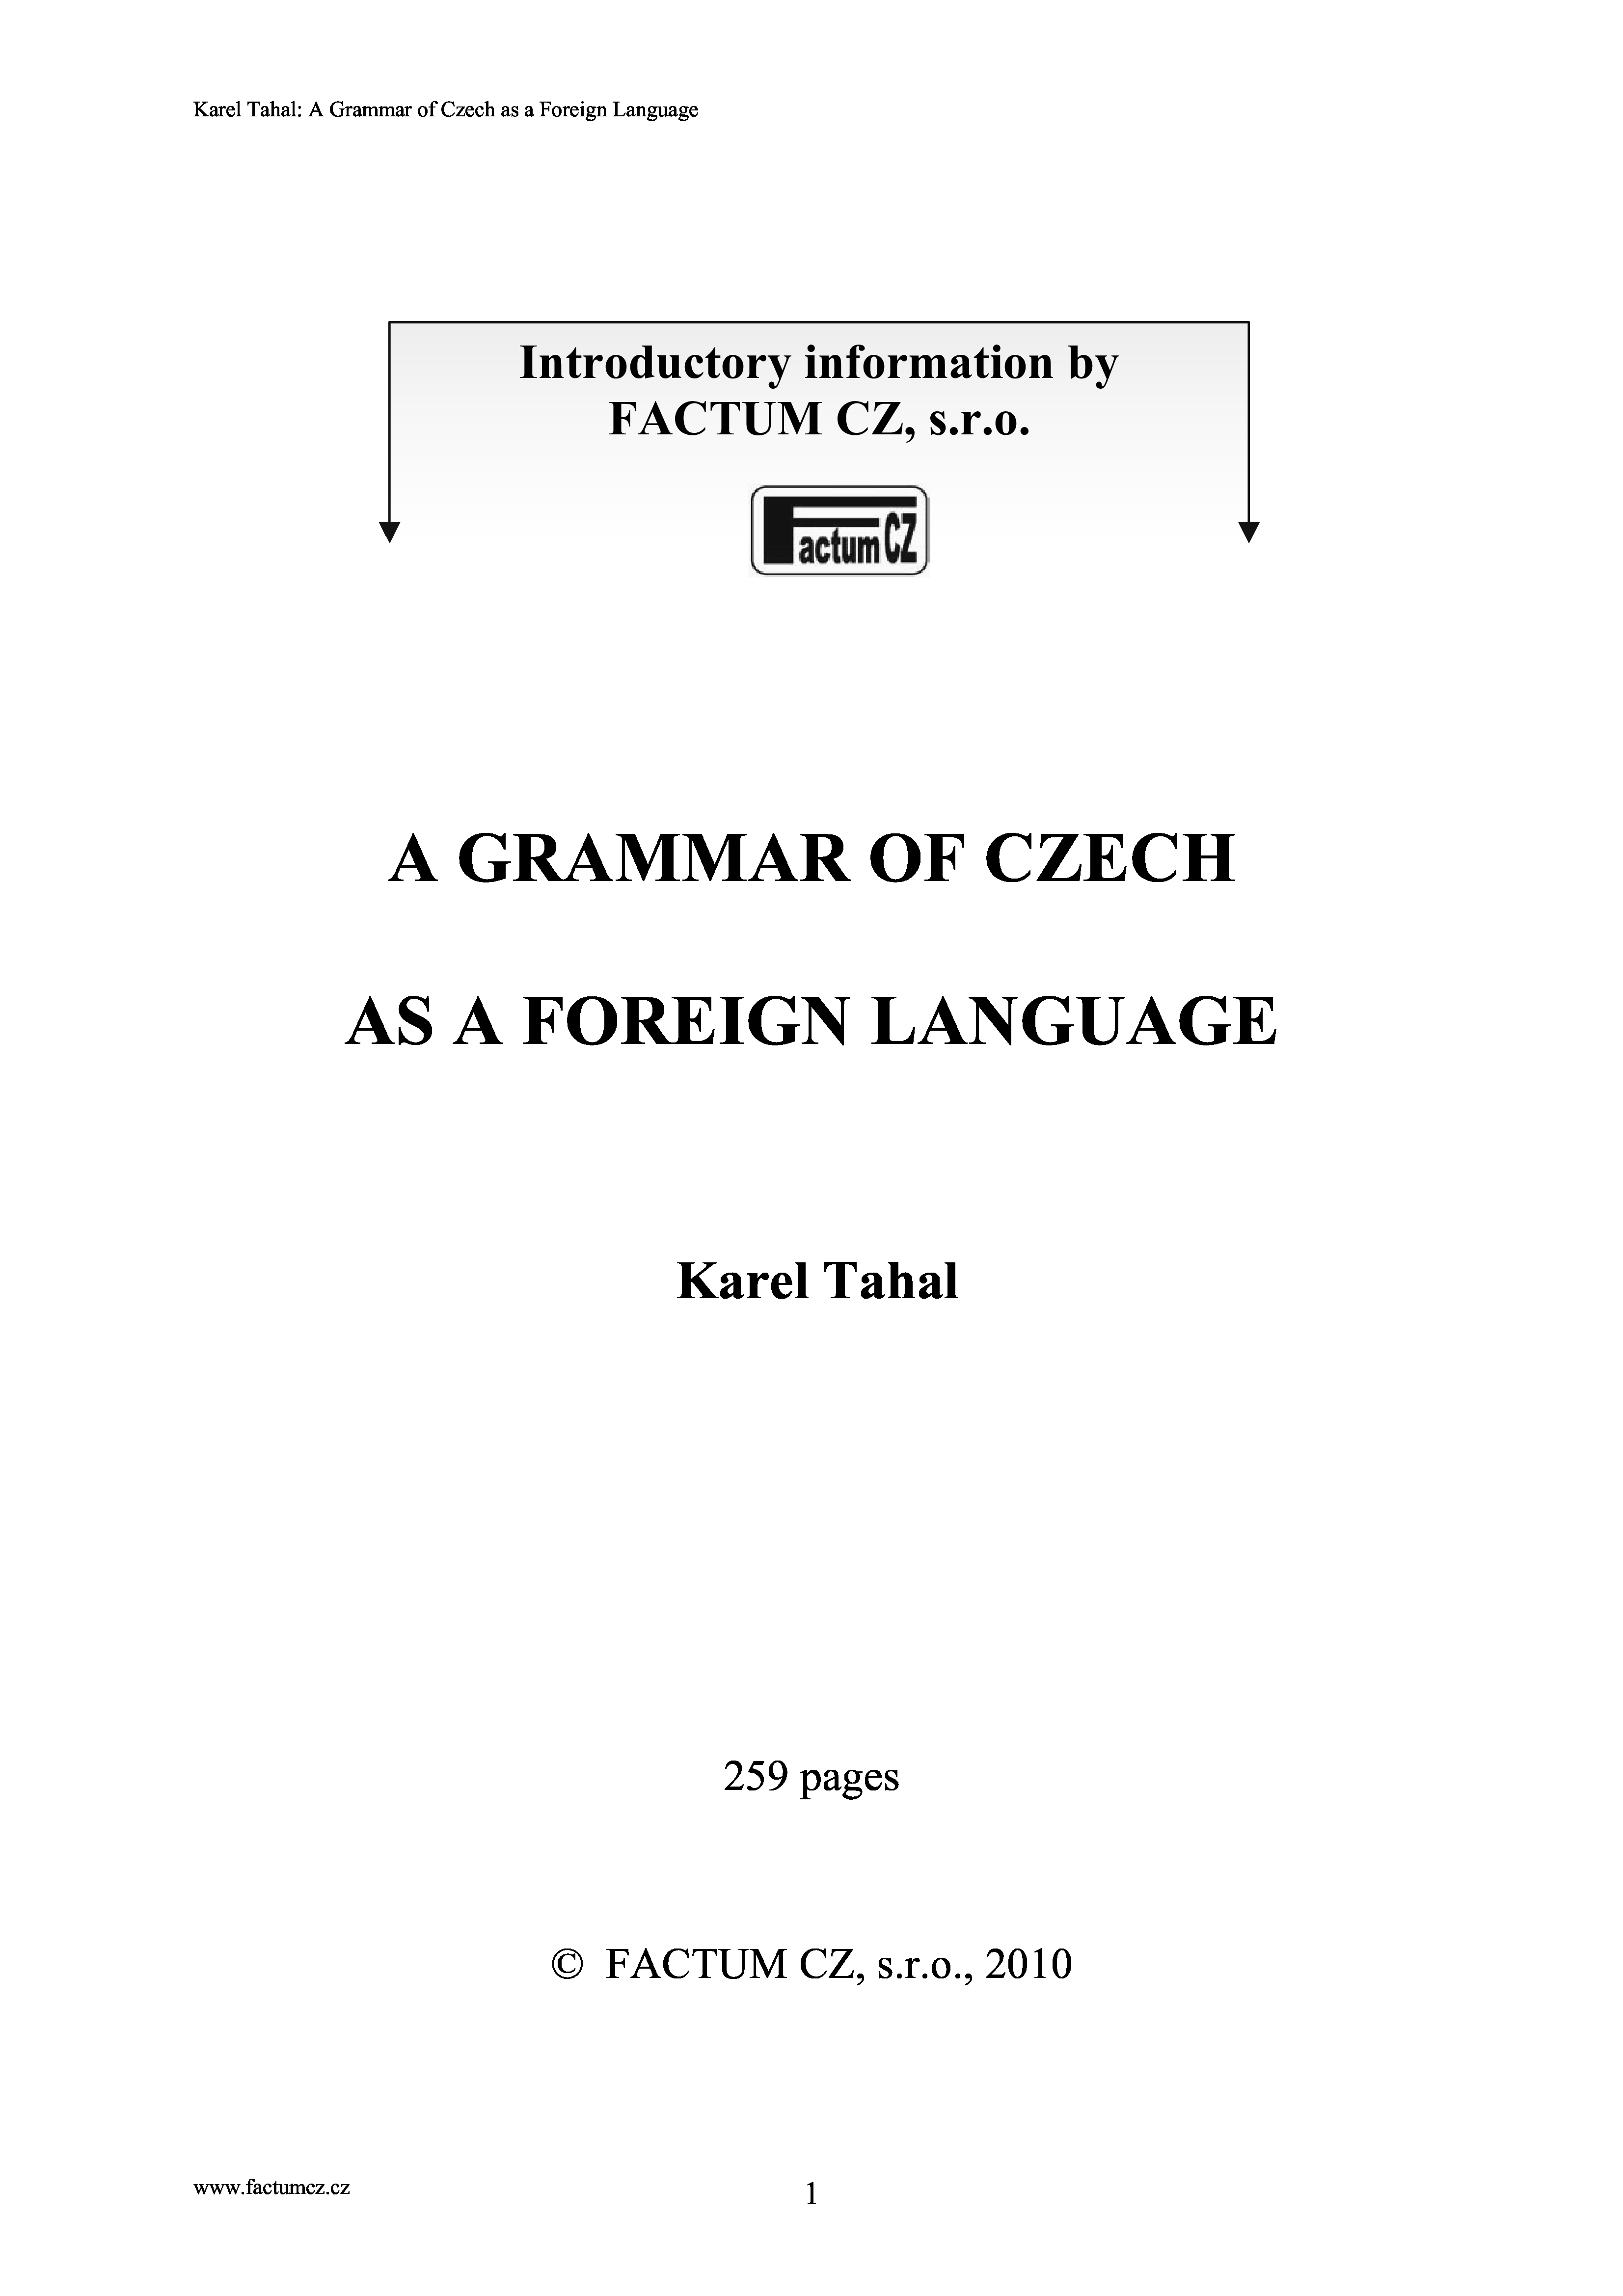 A grammar of Czech language as a foreign language